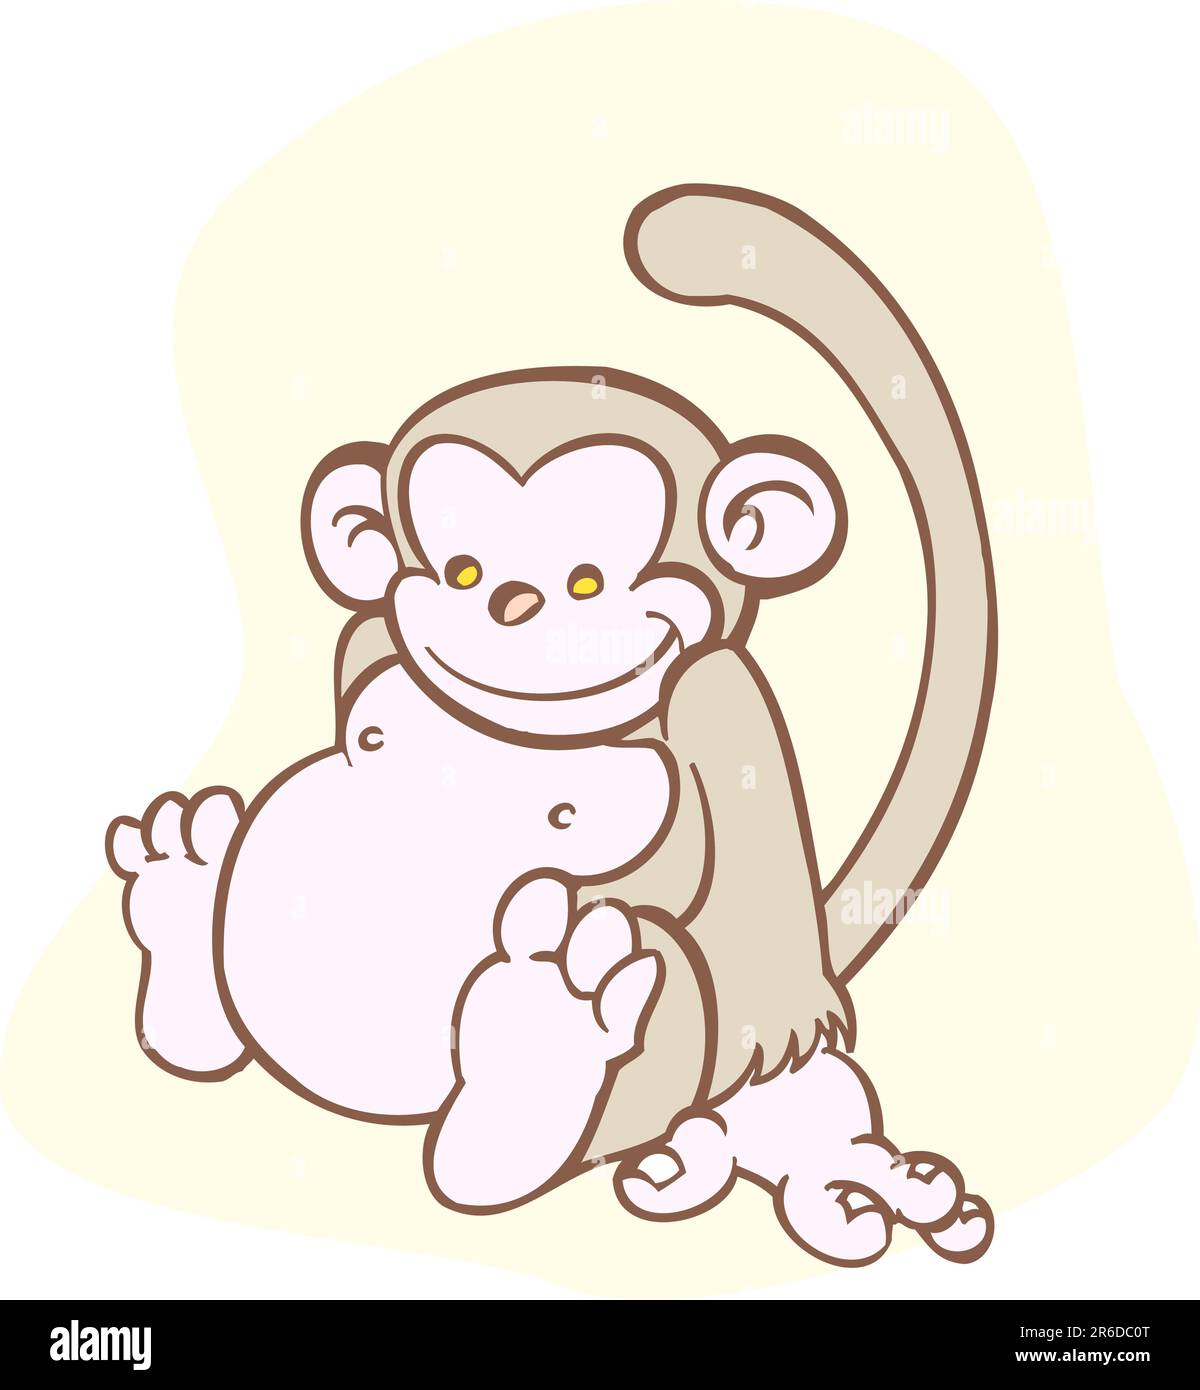 Süßer, kleiner Affe, der mit einem Lächeln sitzt. Stock Vektor